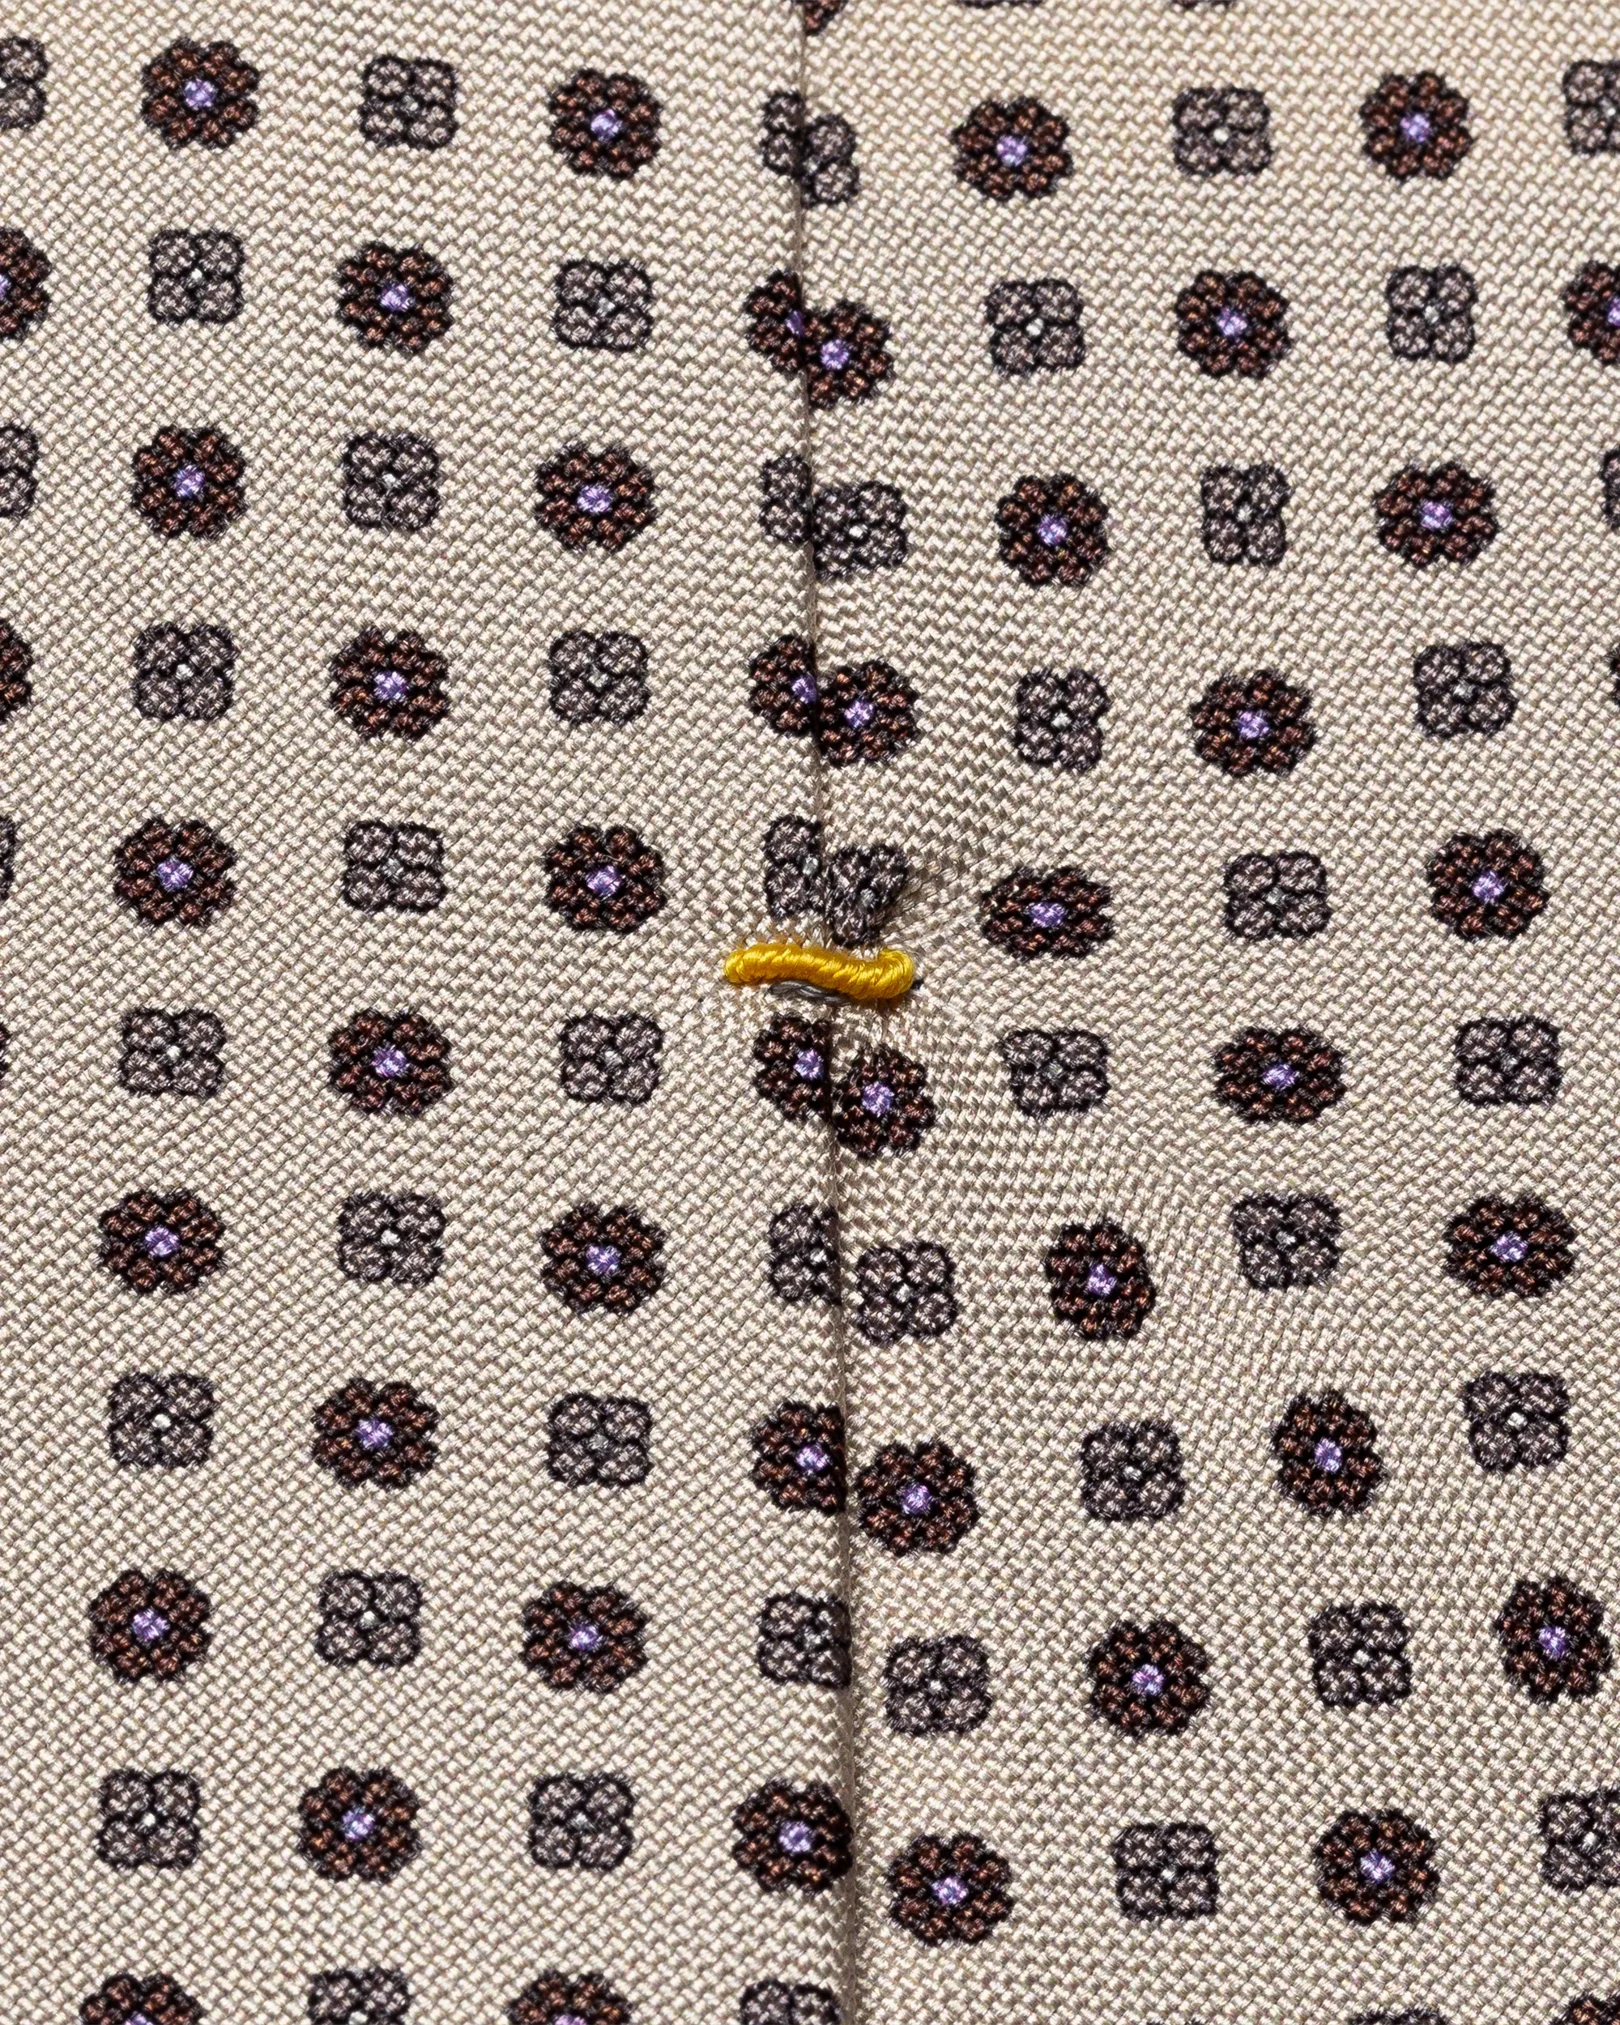 Eton - brown flower printed tie